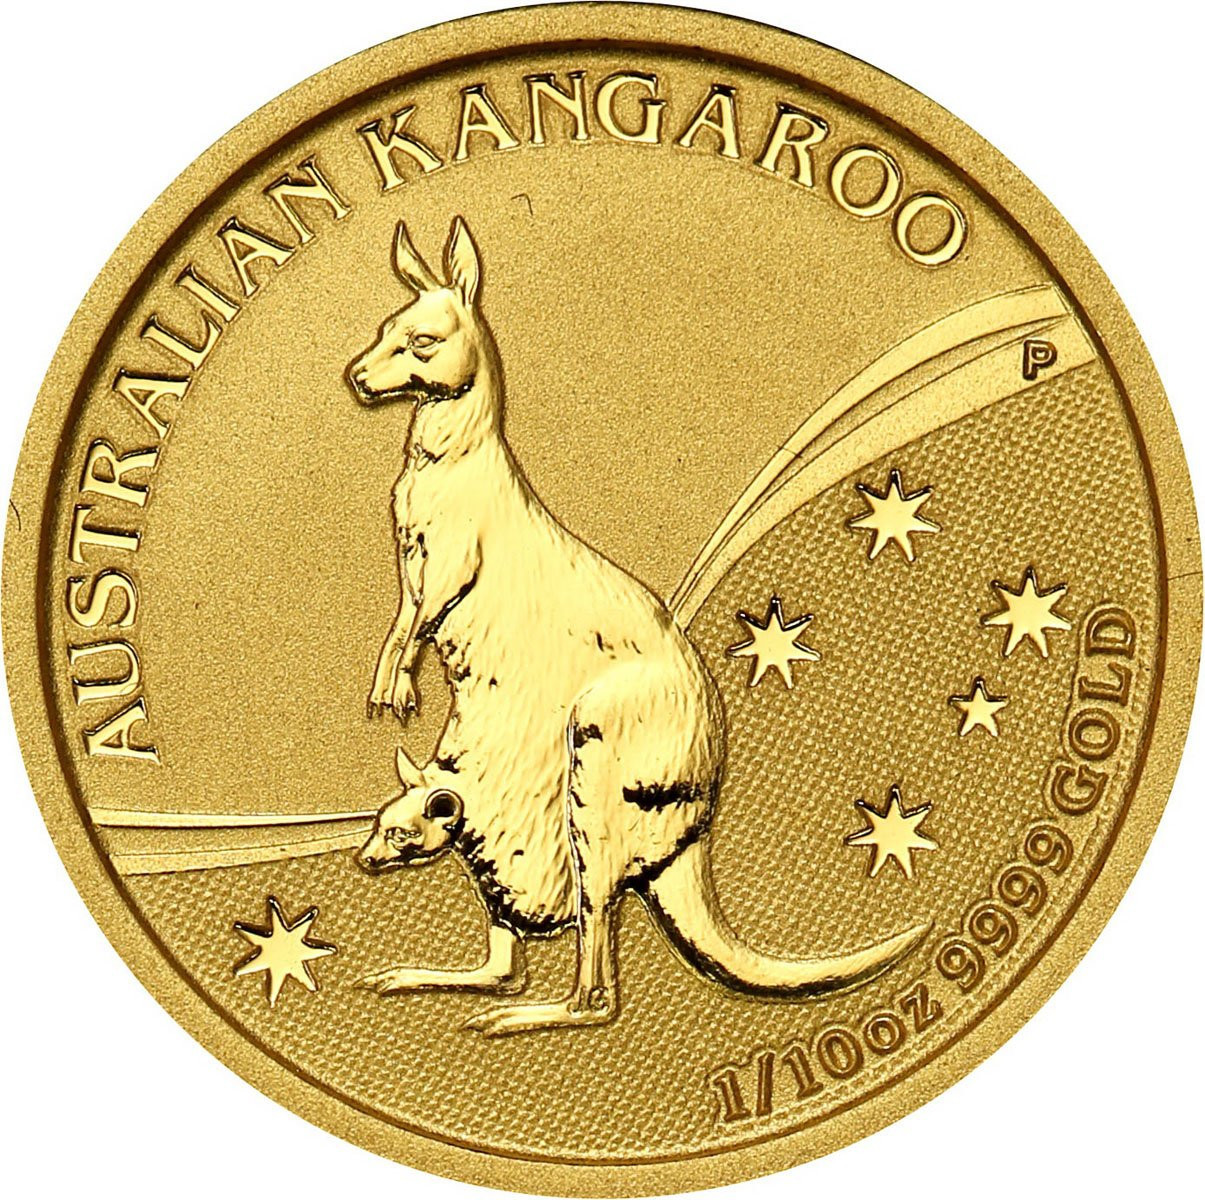 Australia. 15 dolarów 2009 Kangur - 1/10 uncji złota